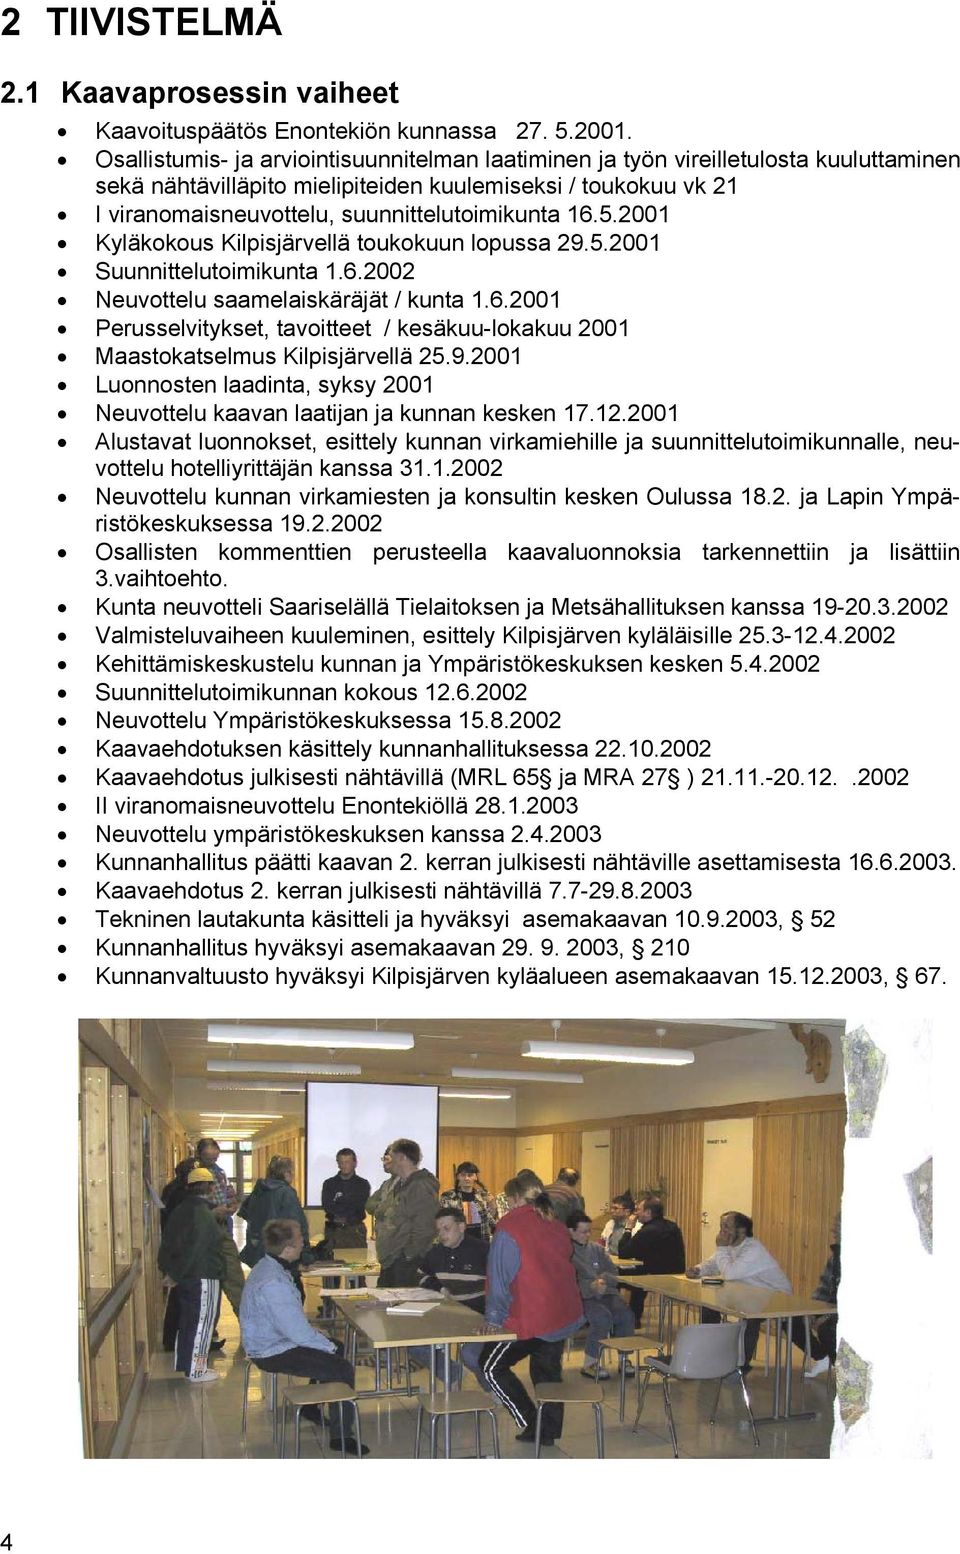 16.5.2001 Kyläkokous Kilpisjärvellä toukokuun lopussa 29.5.2001 Suunnittelutoimikunta 1.6.2002 Neuvottelu saamelaiskäräjät / kunta 1.6.2001 Perusselvitykset, tavoitteet / kesäkuu-lokakuu 2001 Maastokatselmus Kilpisjärvellä 25.